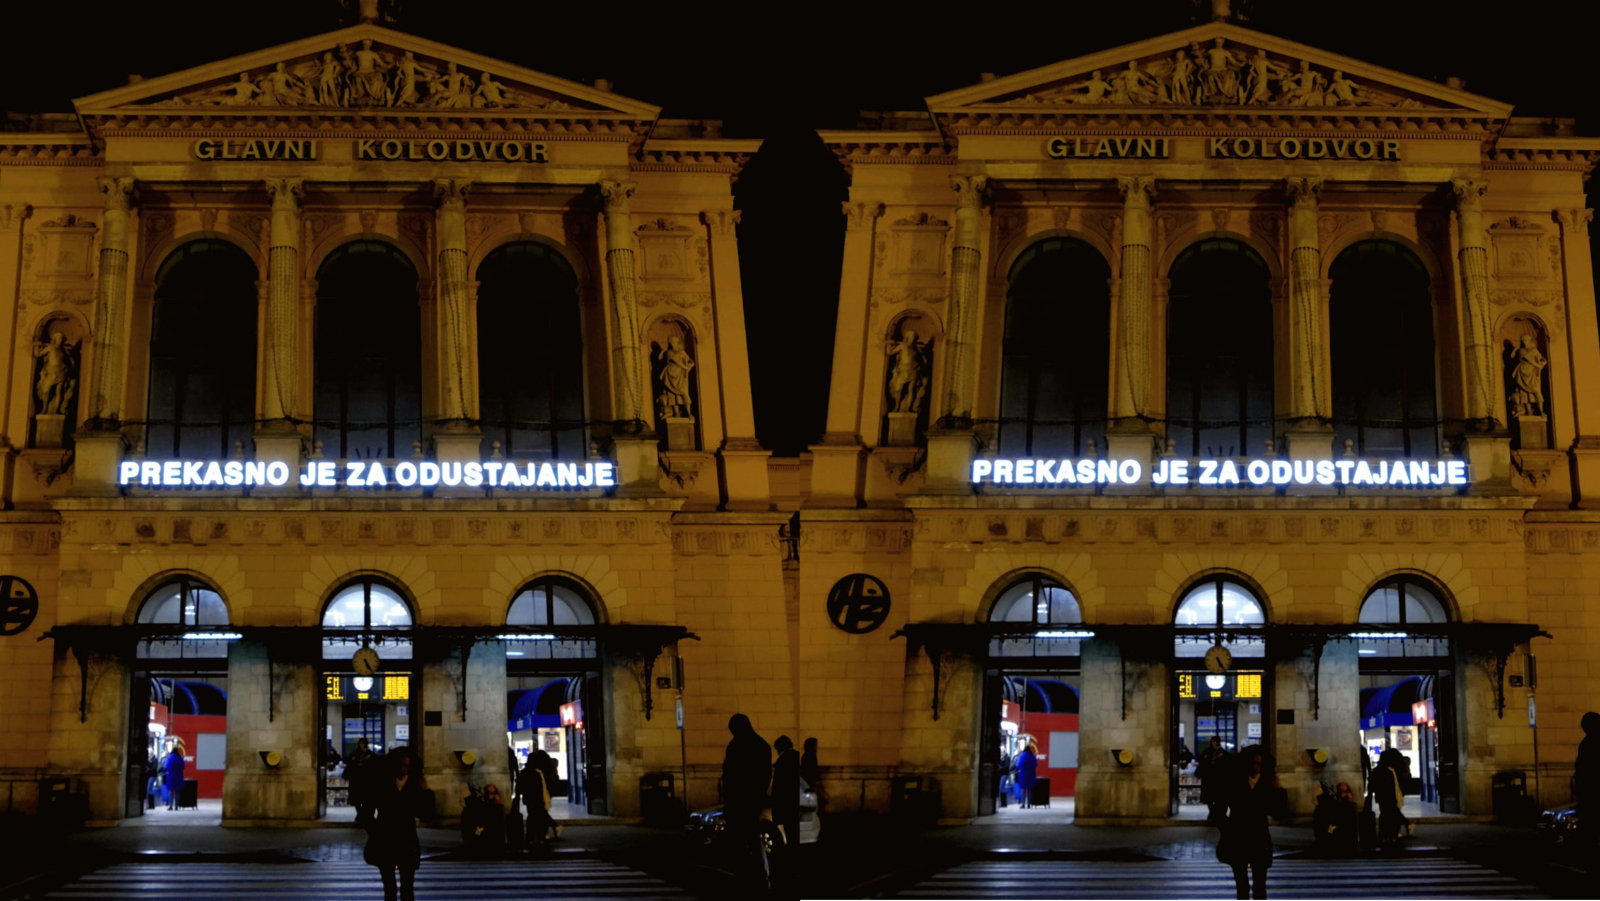 Jeste li primijetili novu instalaciju na zagrebačkom Glavnom kolodvoru “Prekasno je za odustajanje”